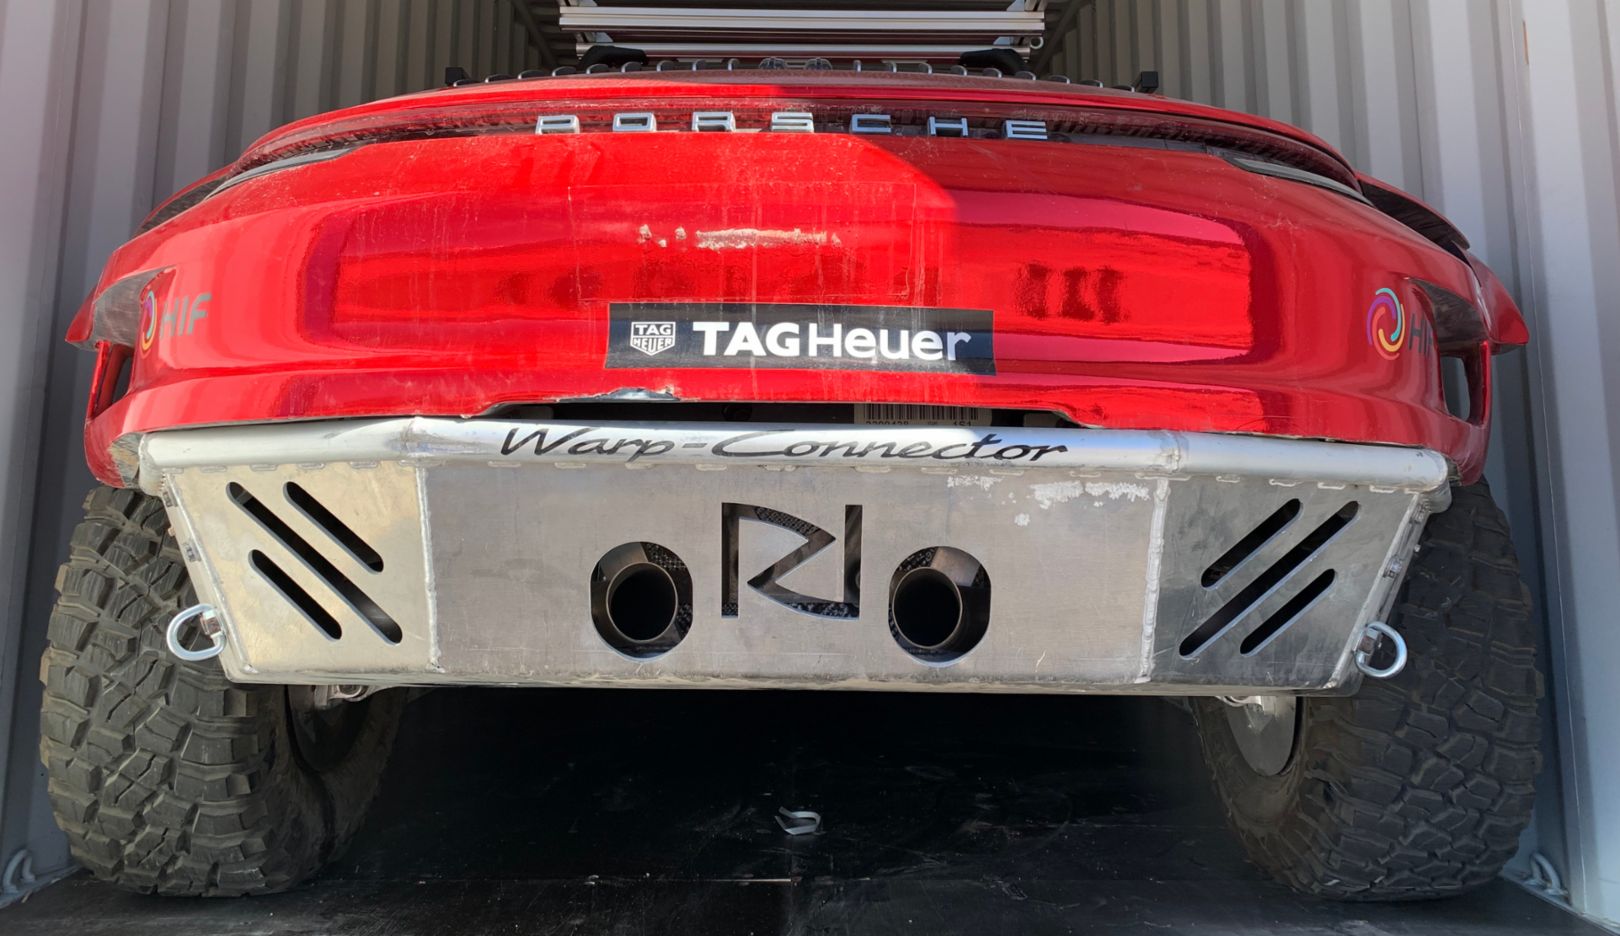 Imponente vista posteriore: la scritta Warp Connector indica il sistema omonimo, che originariamente doveva trovare impiego nella Porsche 919 Hybrid (LMP1).